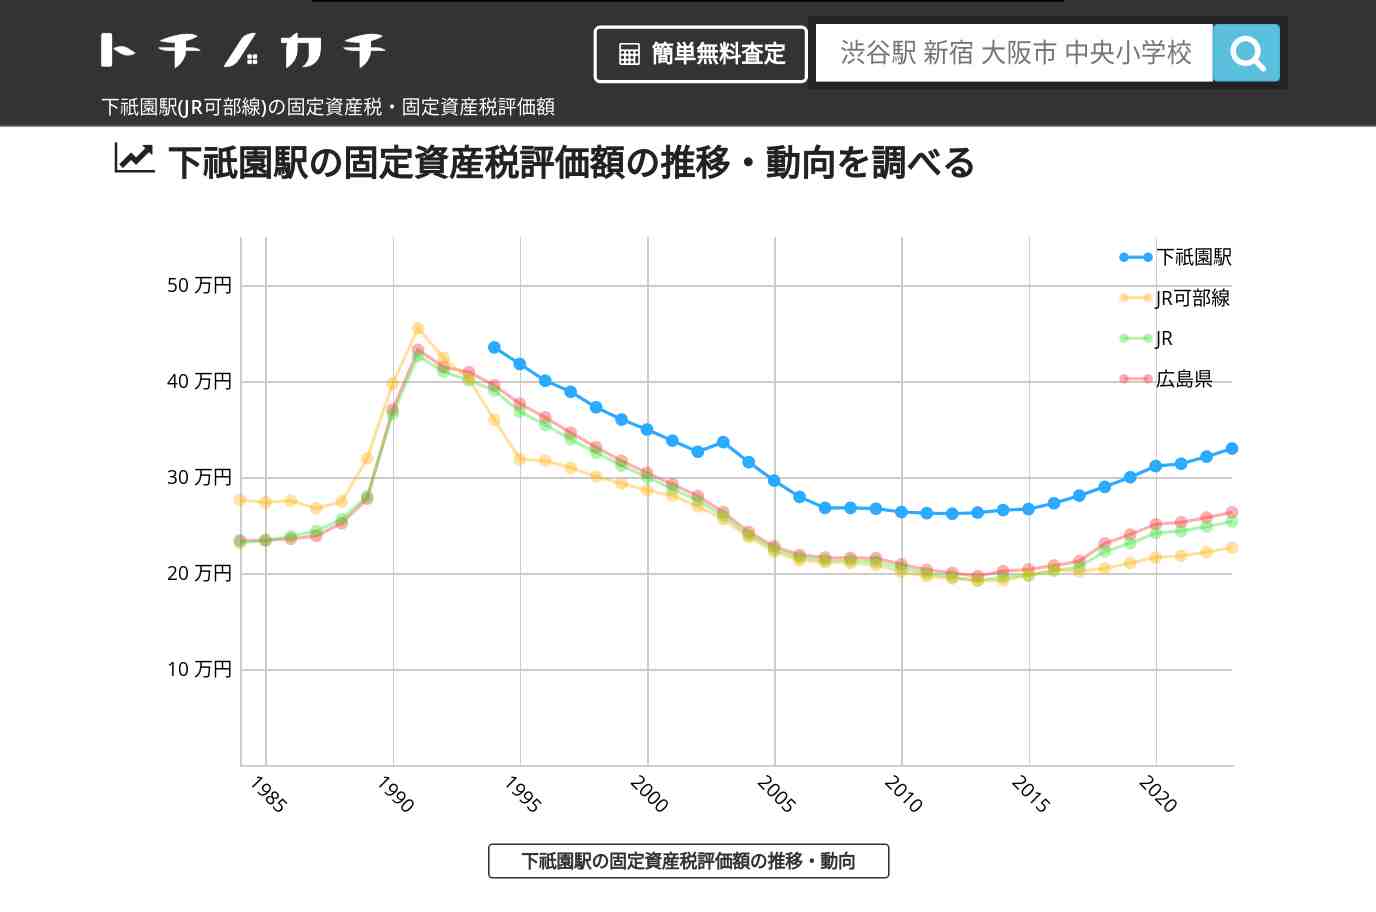 下祇園駅(JR可部線)の固定資産税・固定資産税評価額 | トチノカチ